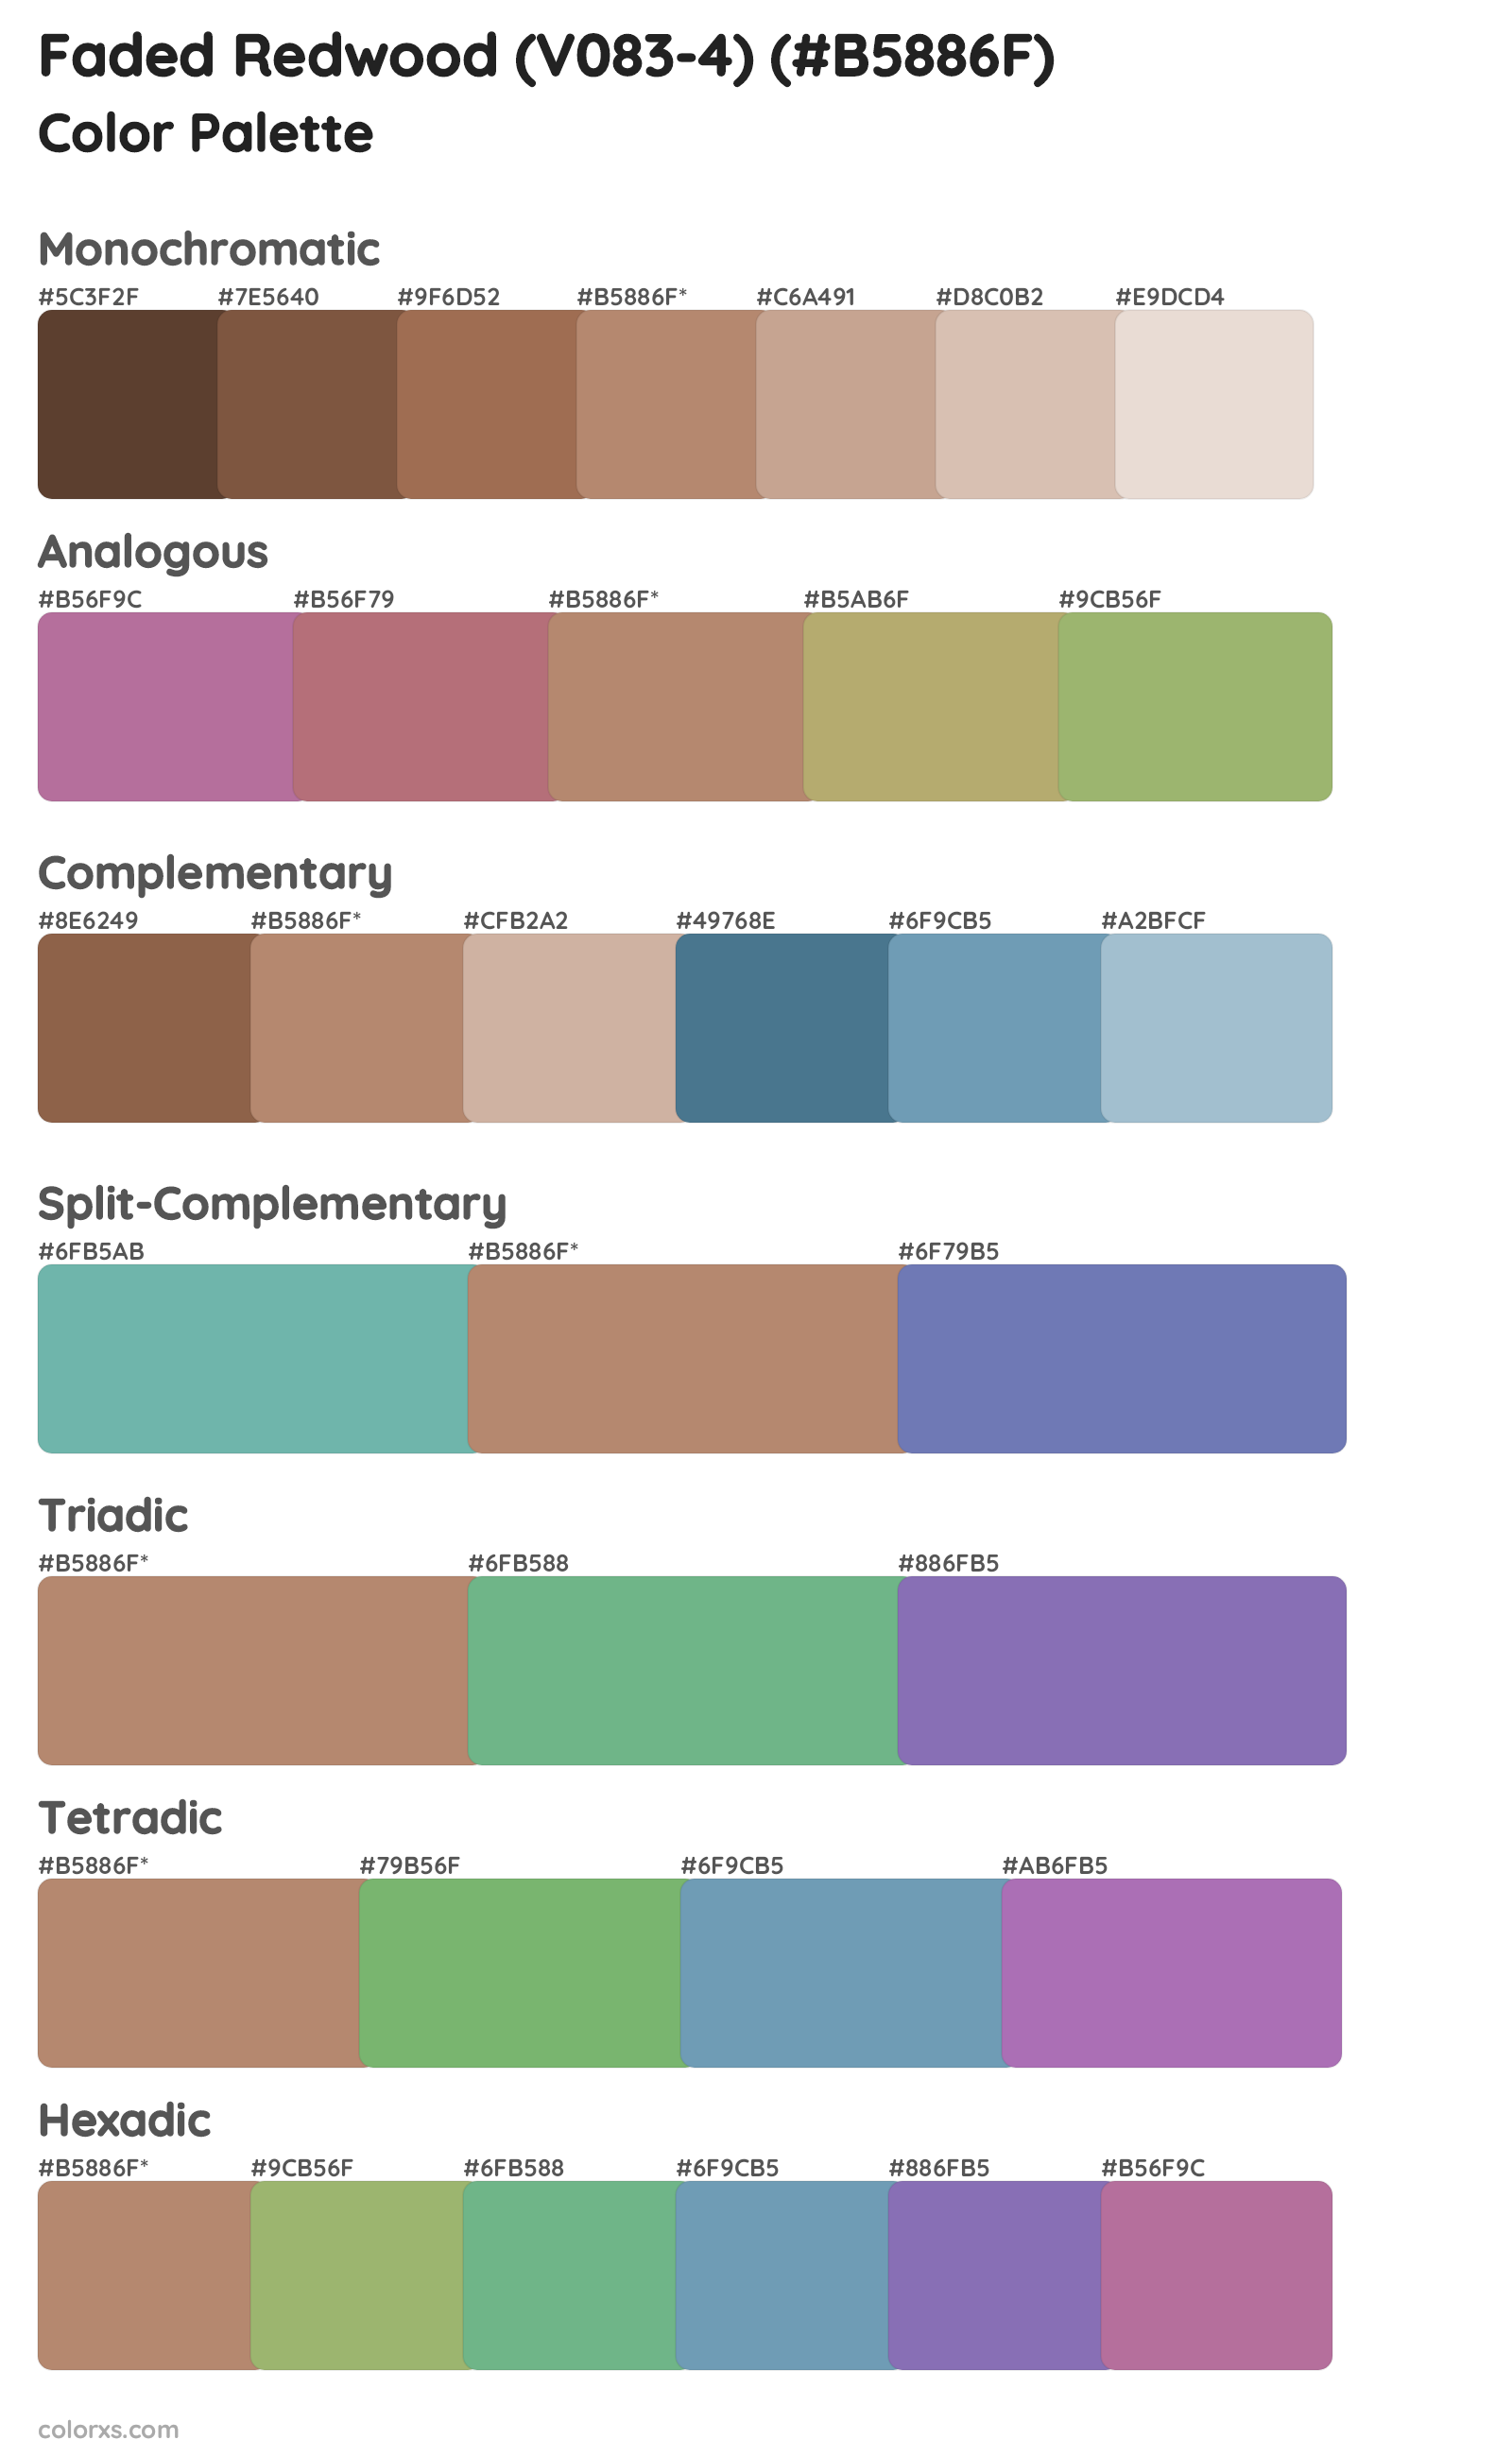 Faded Redwood (V083-4) Color Scheme Palettes